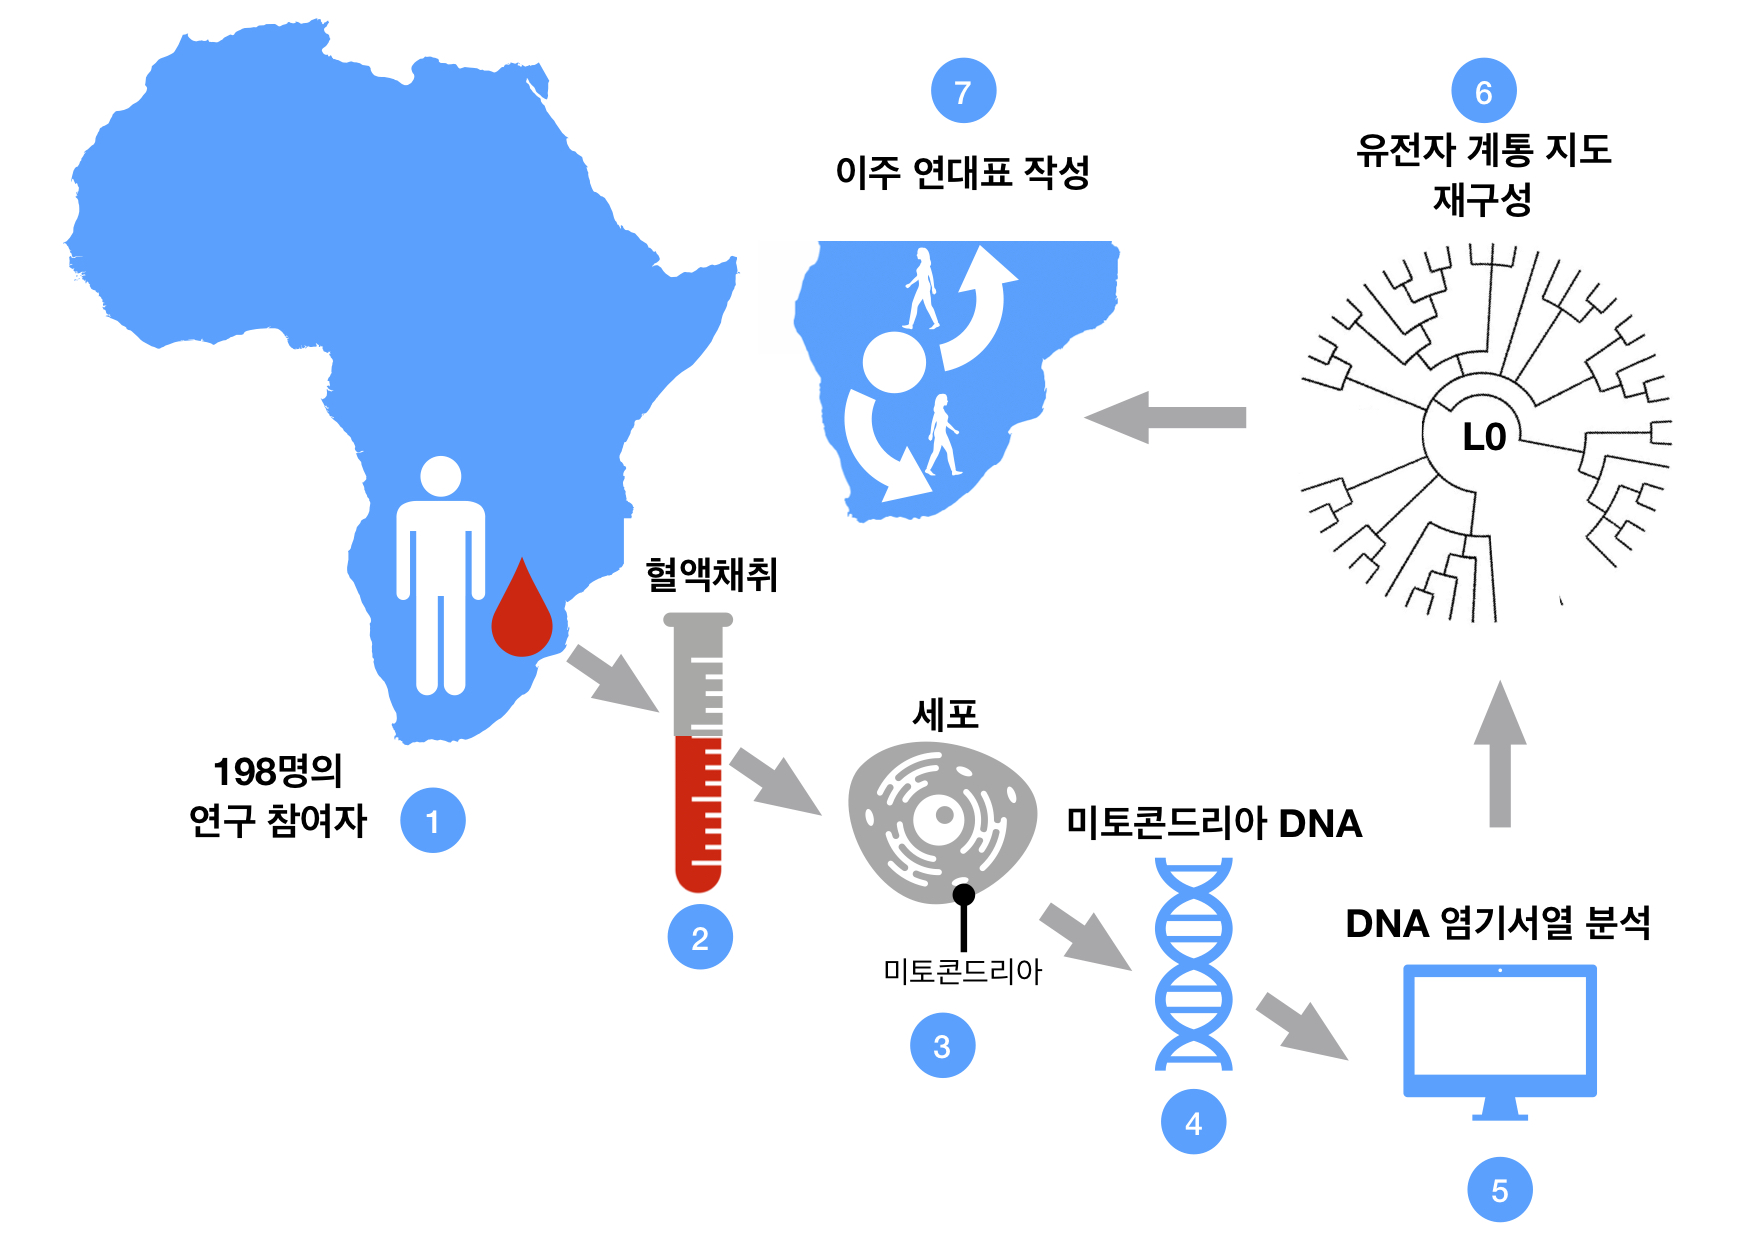 그림 1. 혈액 샘플로부터 L0 유전자 뿌리를 추적하는 과정